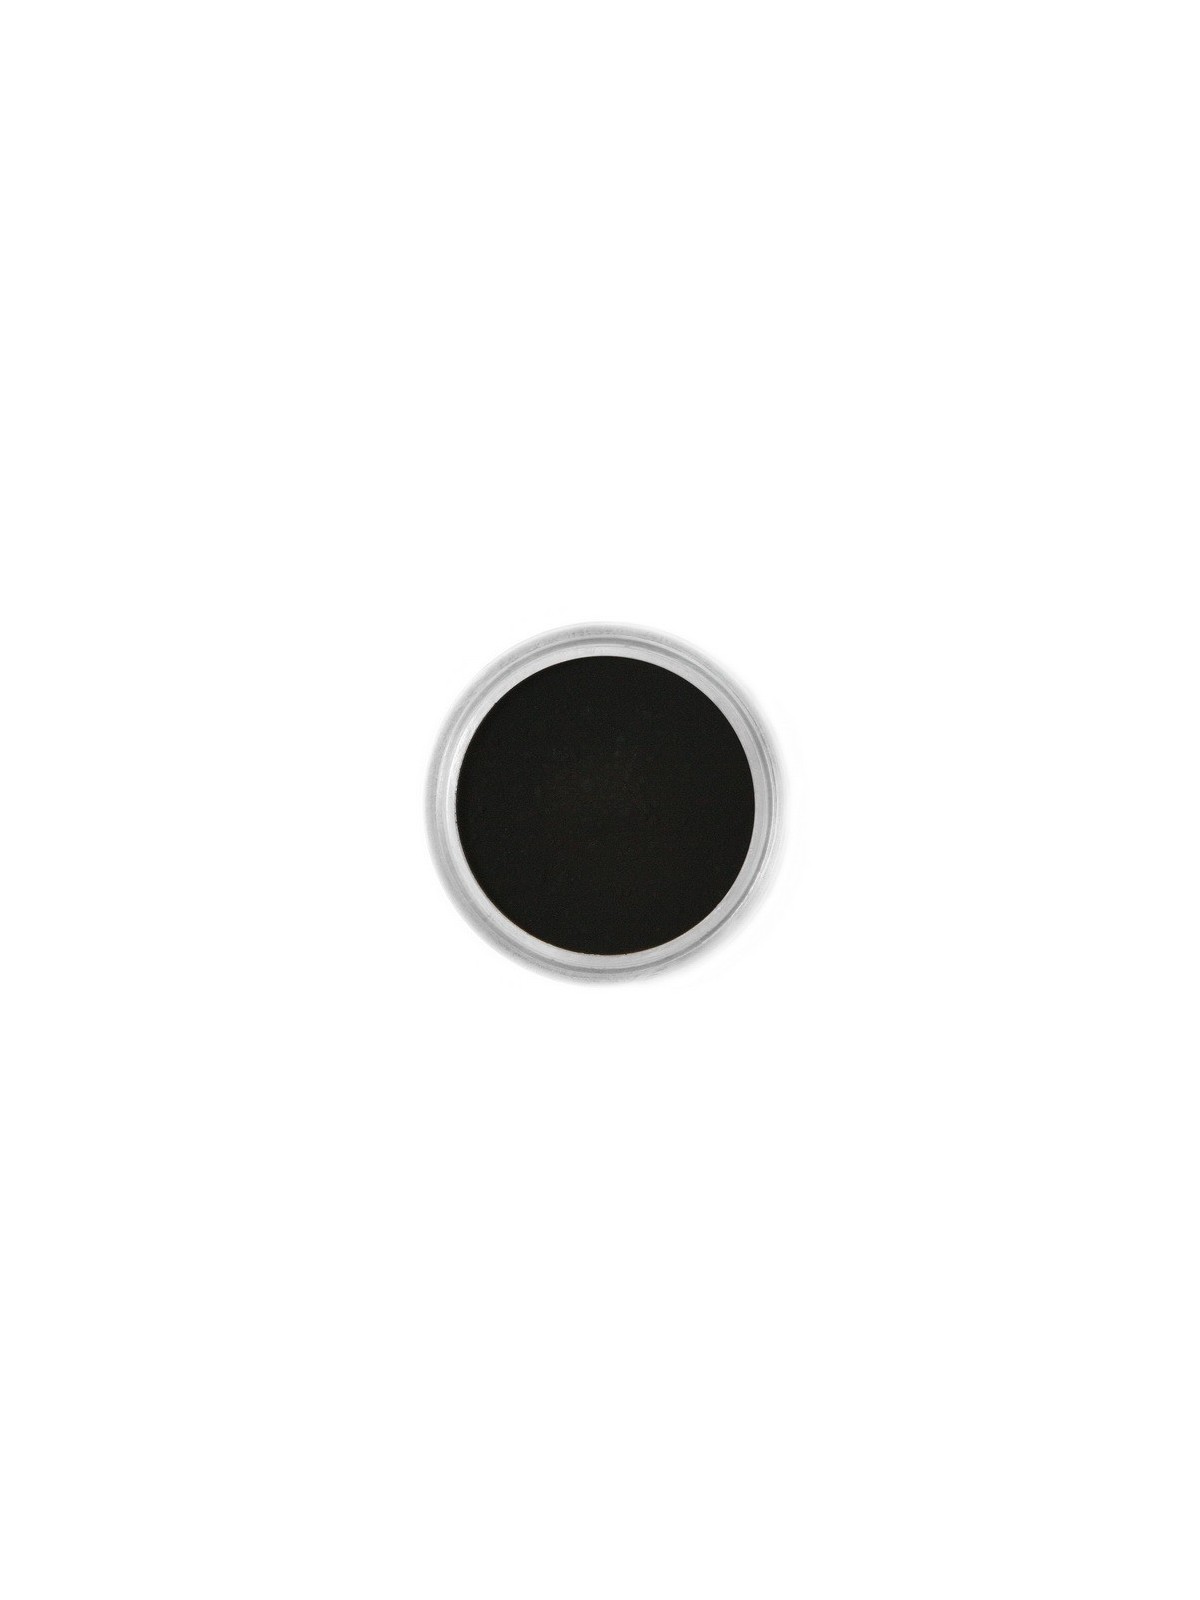 Jedlá prachová barva Fractal - Black, Fekete (1,5 g)